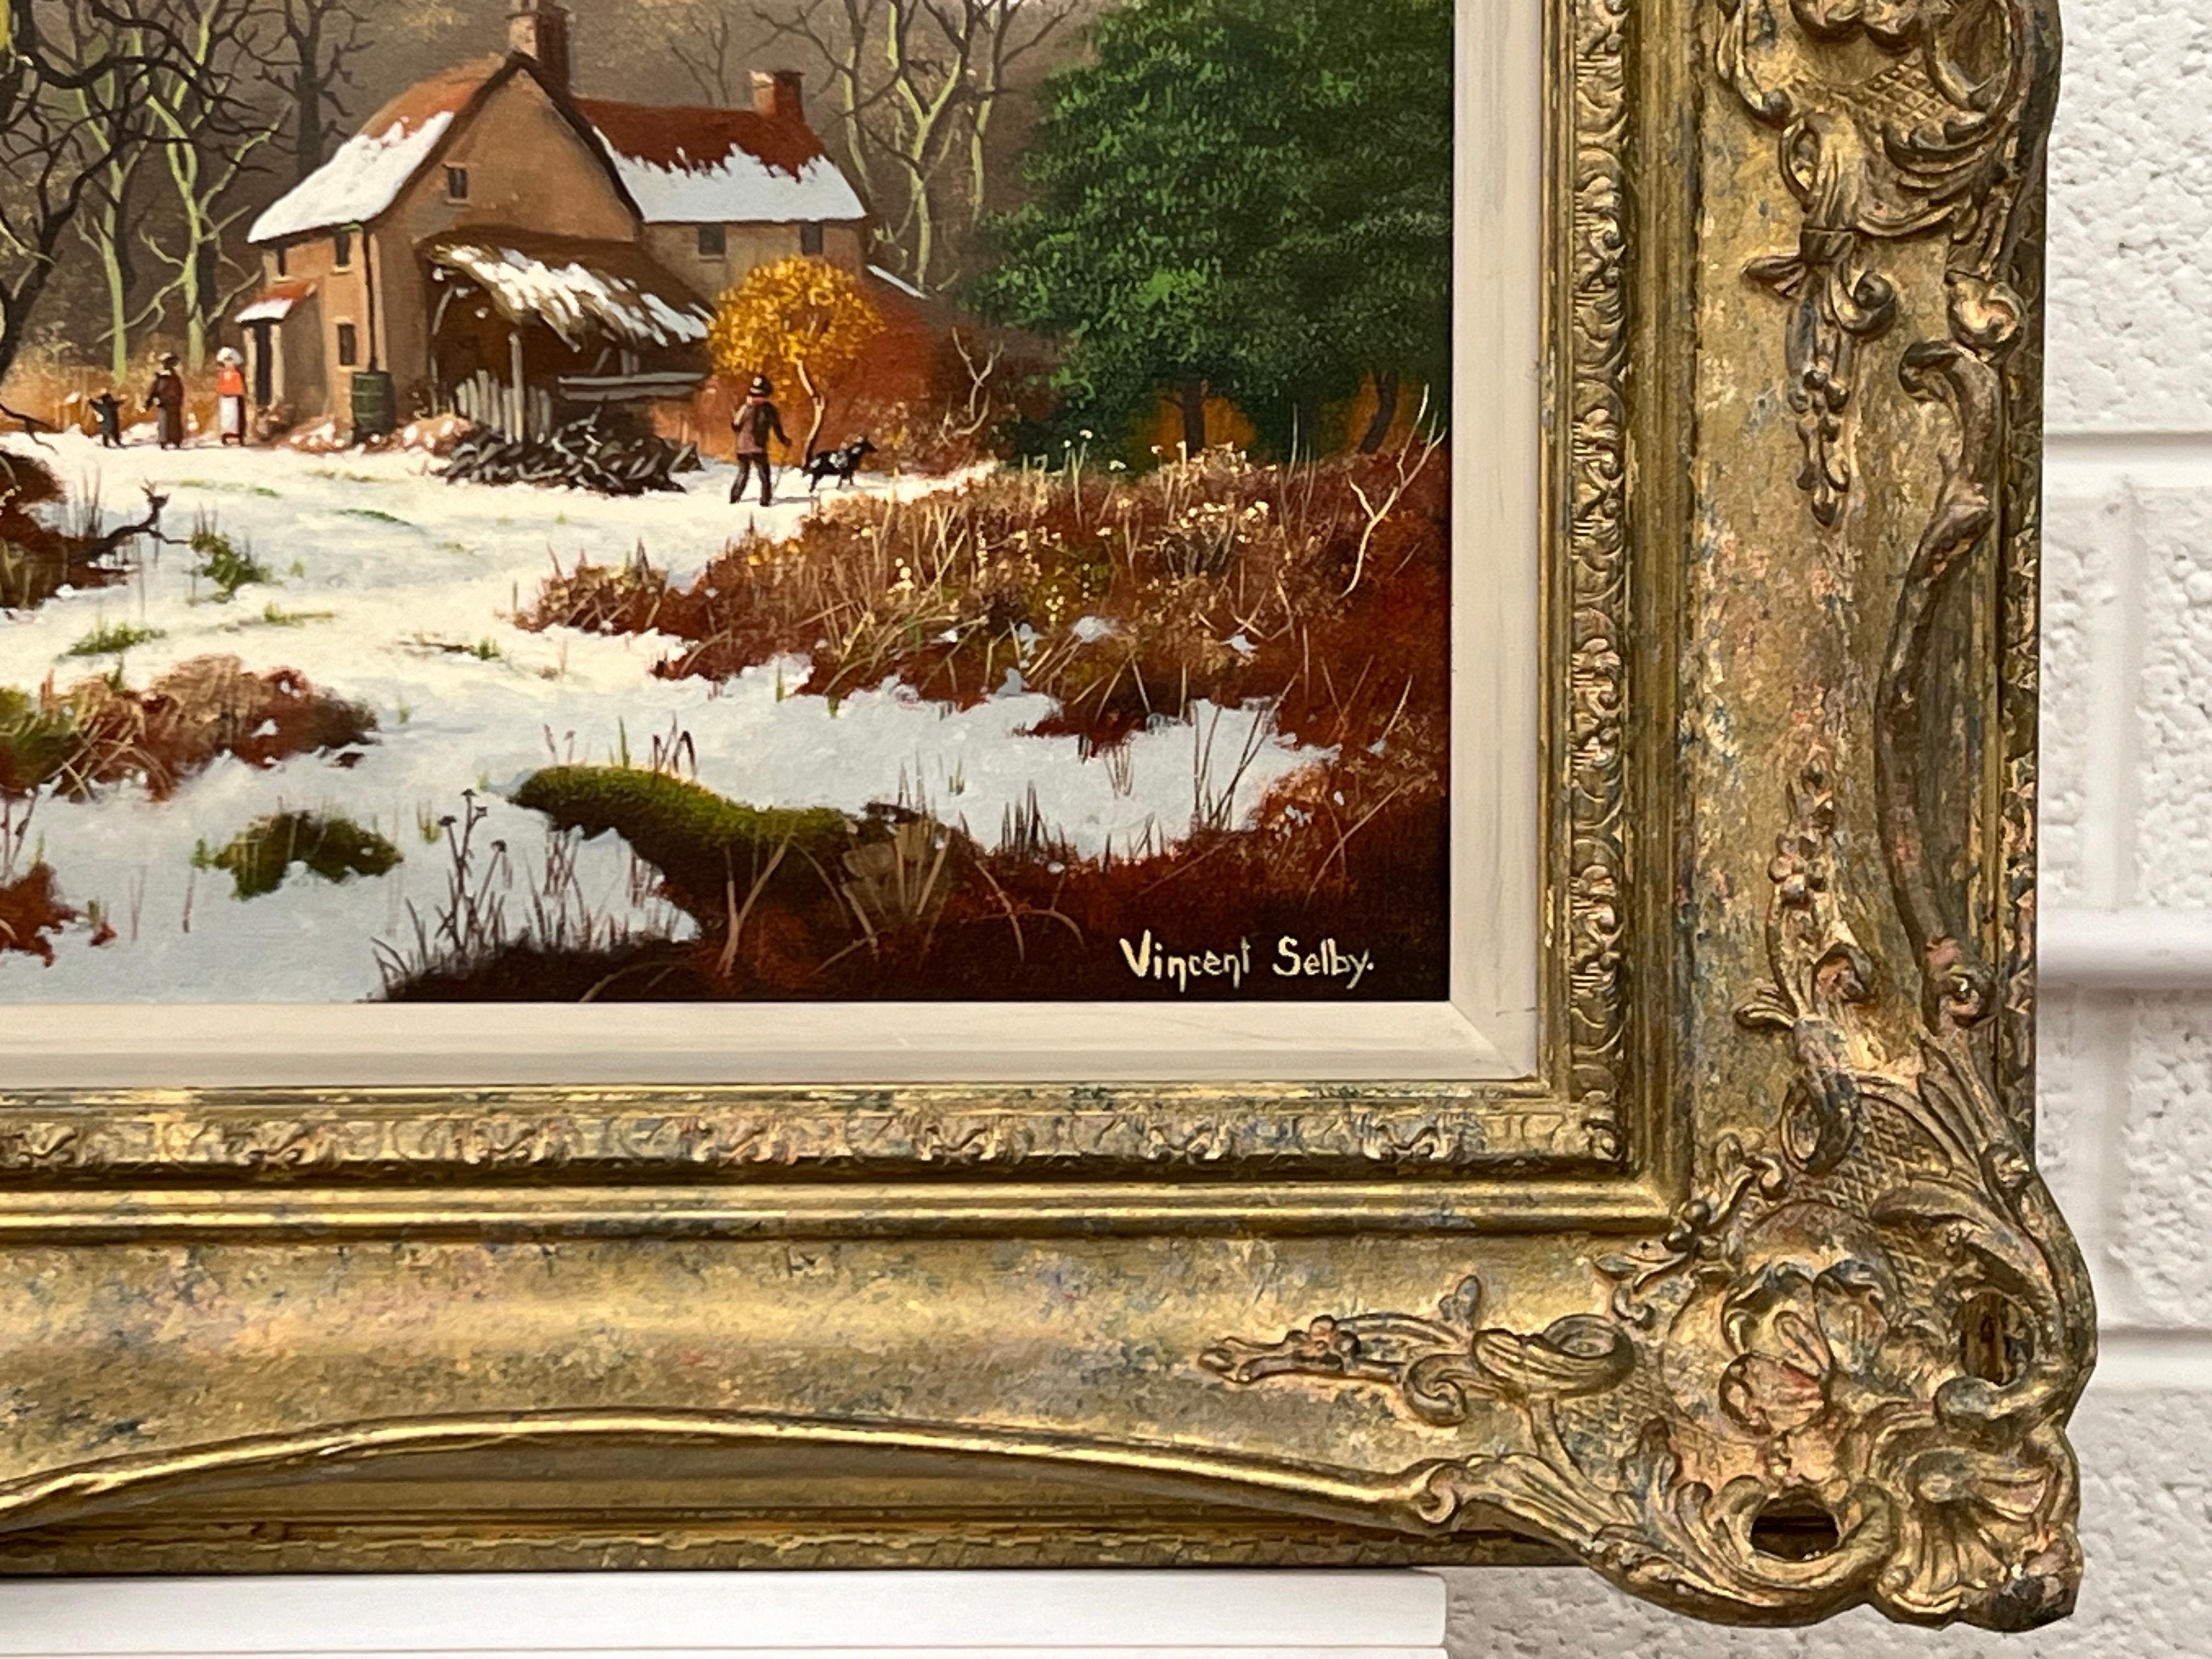 Ein traditionelles Original-Ölgemälde einer winterlichen Dorflandschaft mit Familien und Kindern von einem britischen Künstler des 20. Jahrhunderts. 

Kunst misst 29 x 14 Zoll
Rahmen misst 35 x 20 Zoll  

Vincent Selby (1919 - 2004), britischer